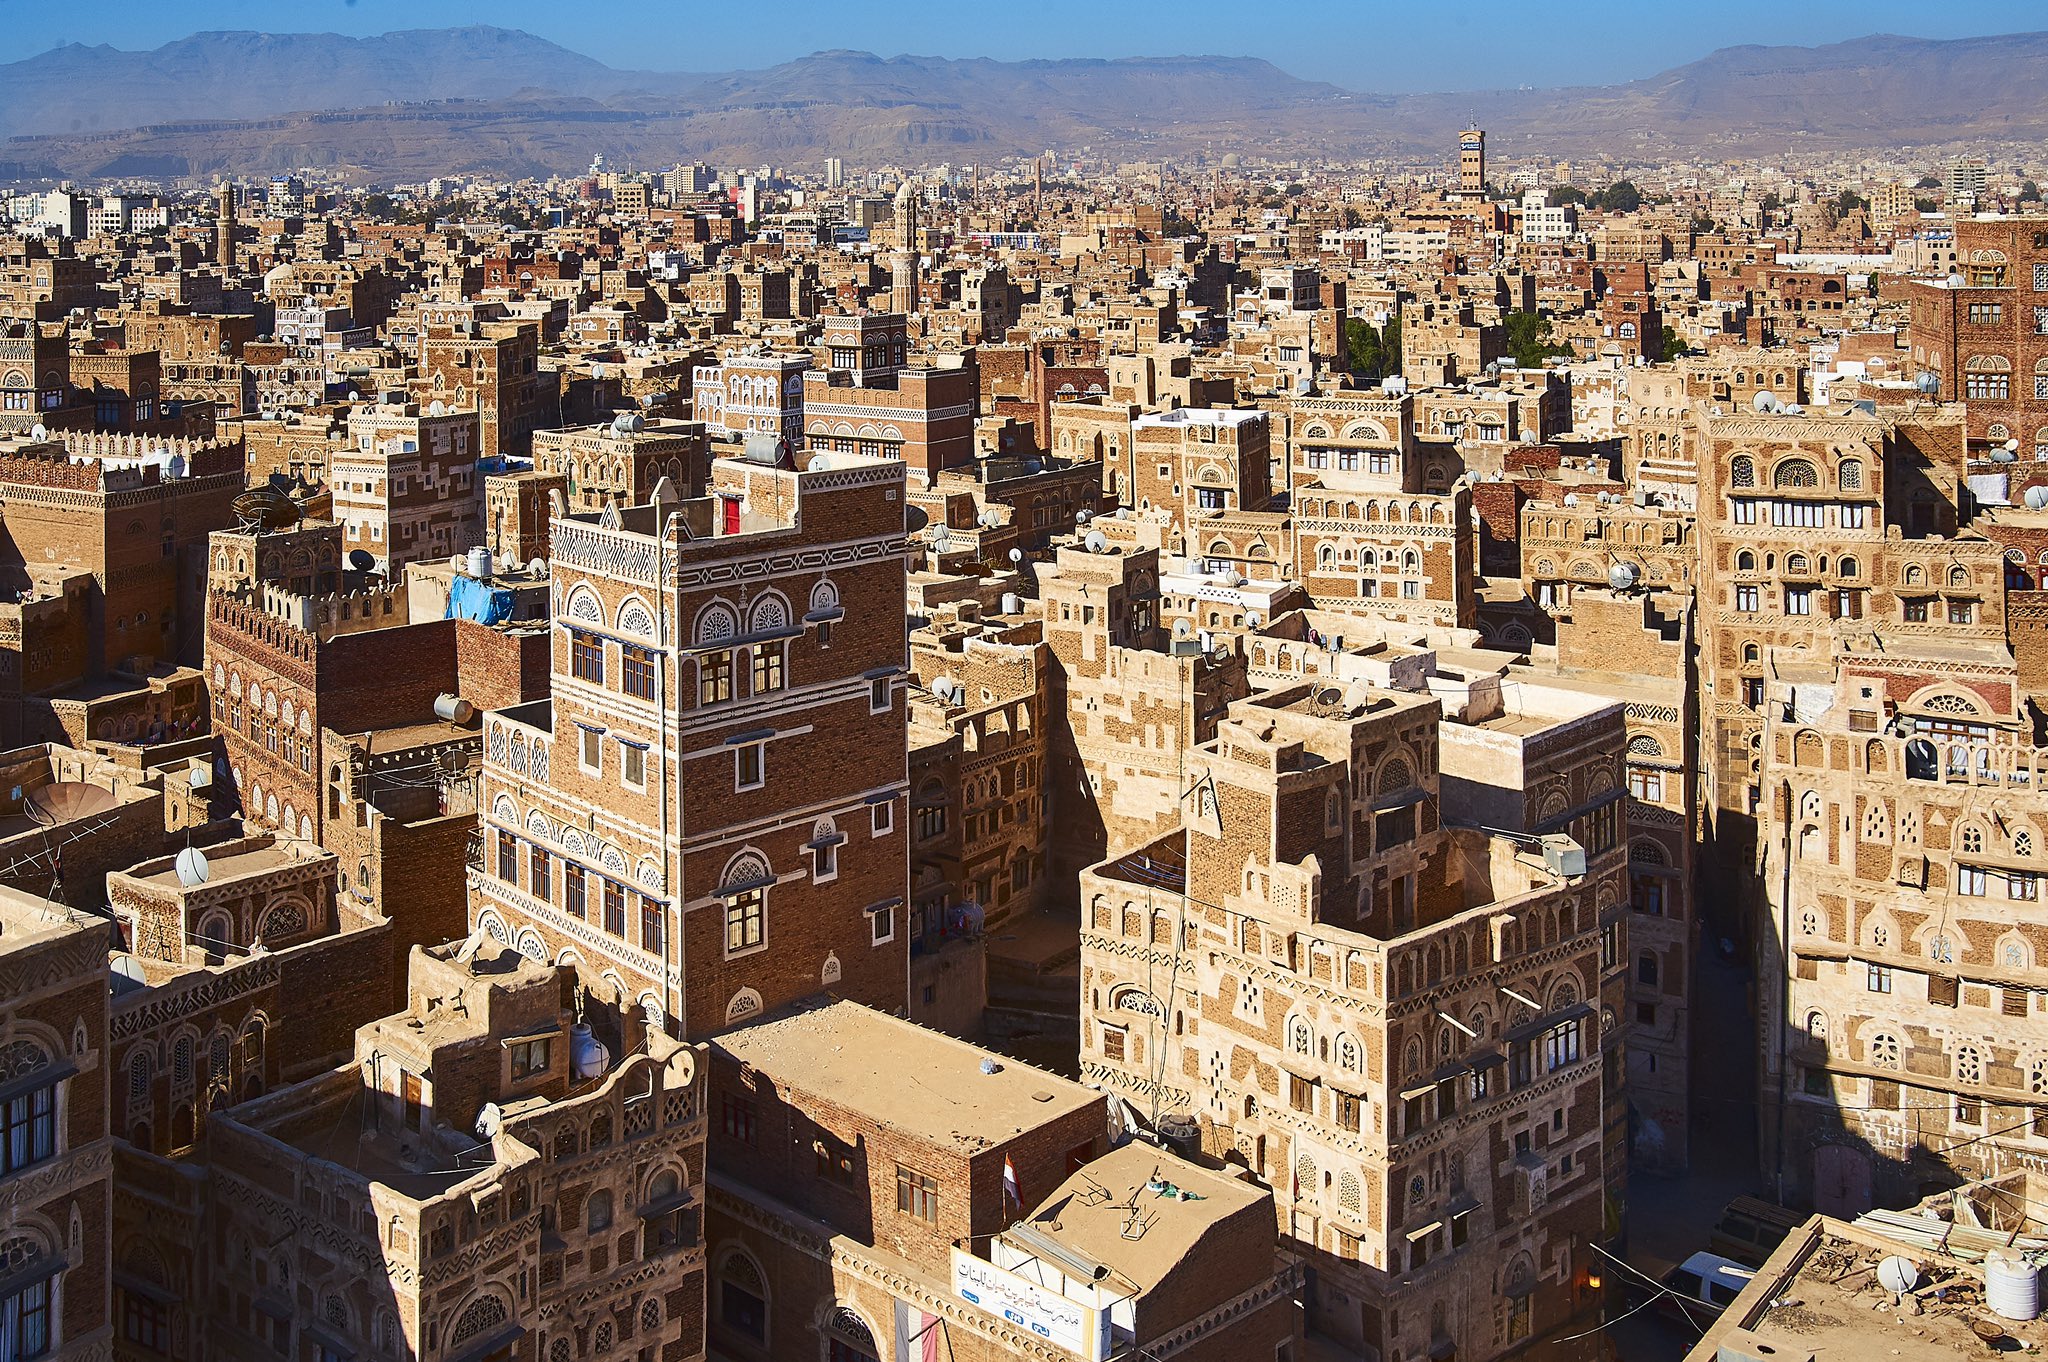 市山光一 Oneberg Inc 中東なのに石油が出ない中東最貧国と言われるイエメン サナアの旧市街は白の縁取りが美しいレンガの建物が立ち並ぶ アラブの春の後 政権は交代したが 内戦が勃発し長期化 現在は立ち入り禁止 11年のアラブの春の時に撮影した